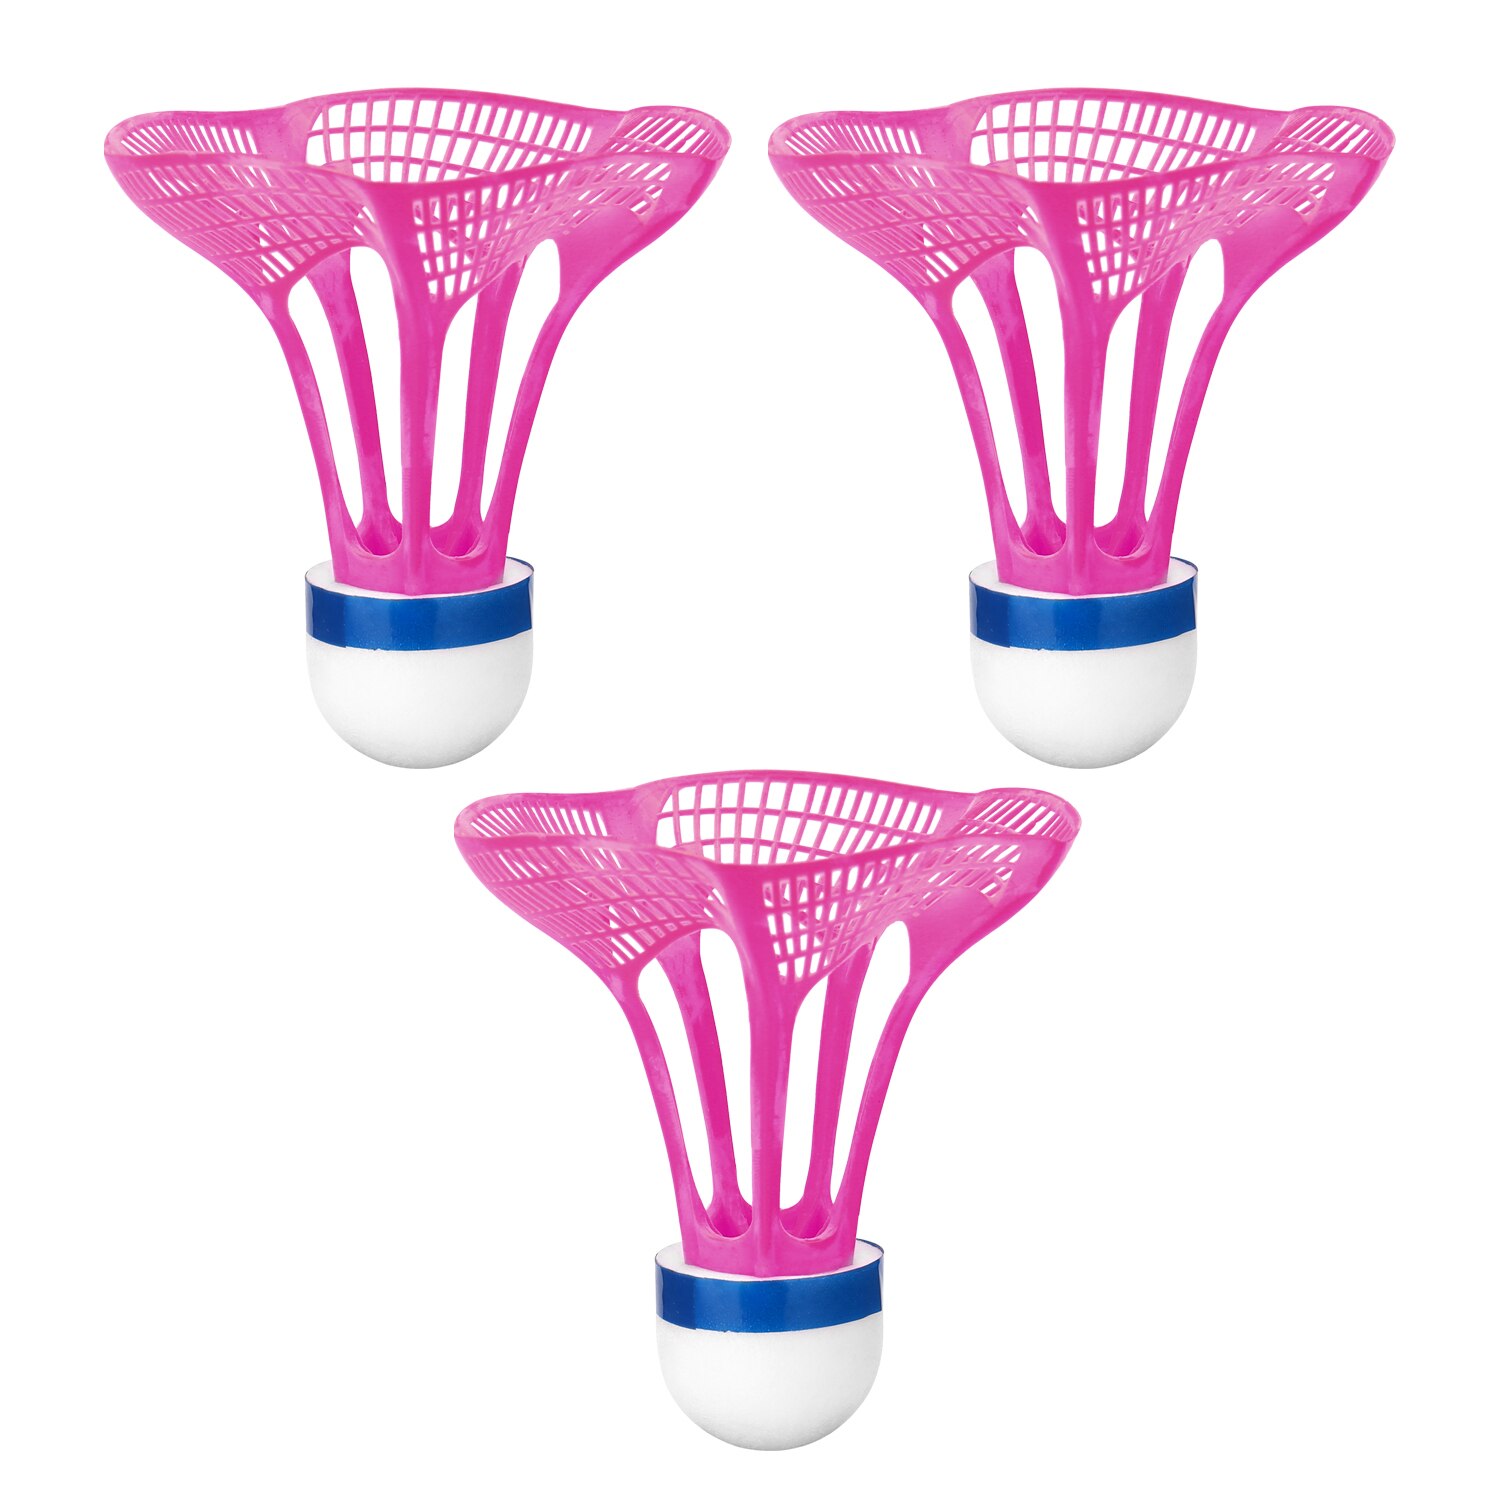 3 stk. udendørs badmintonbold plast airshuttle nylonbold sportstræning træning fjederbuefugle modstand mod vind: Lavendel